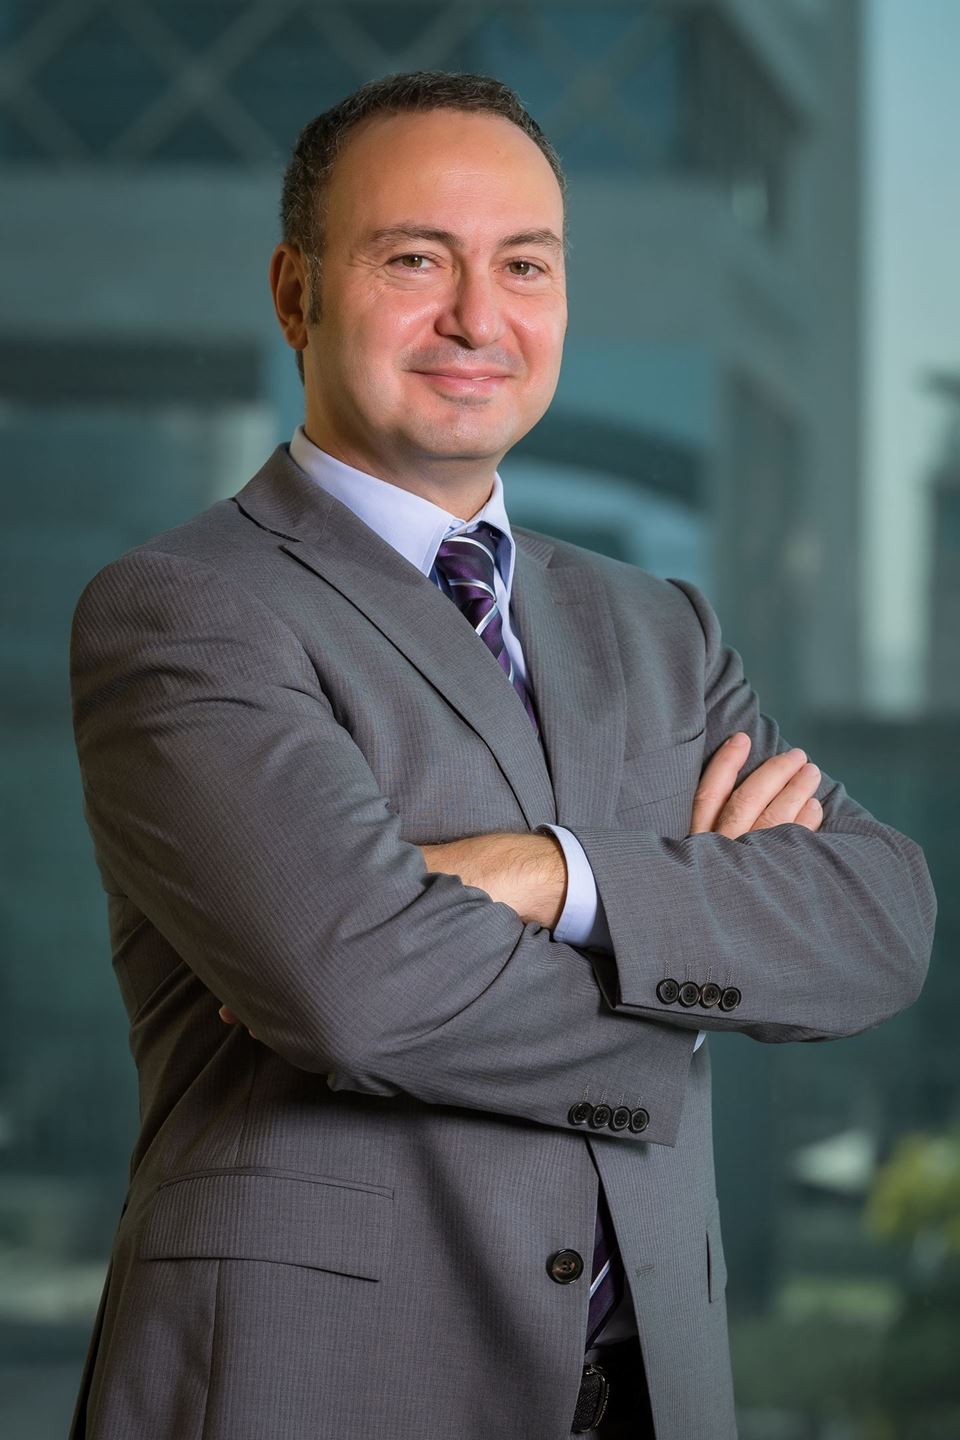 تاركان دميرباس، نائب الرئيس الإقليمي لمنطقة الشرق الأوسط في شركة فيليب موريس للخدمات الإدارية (الشرق الأوسط) المحدودة